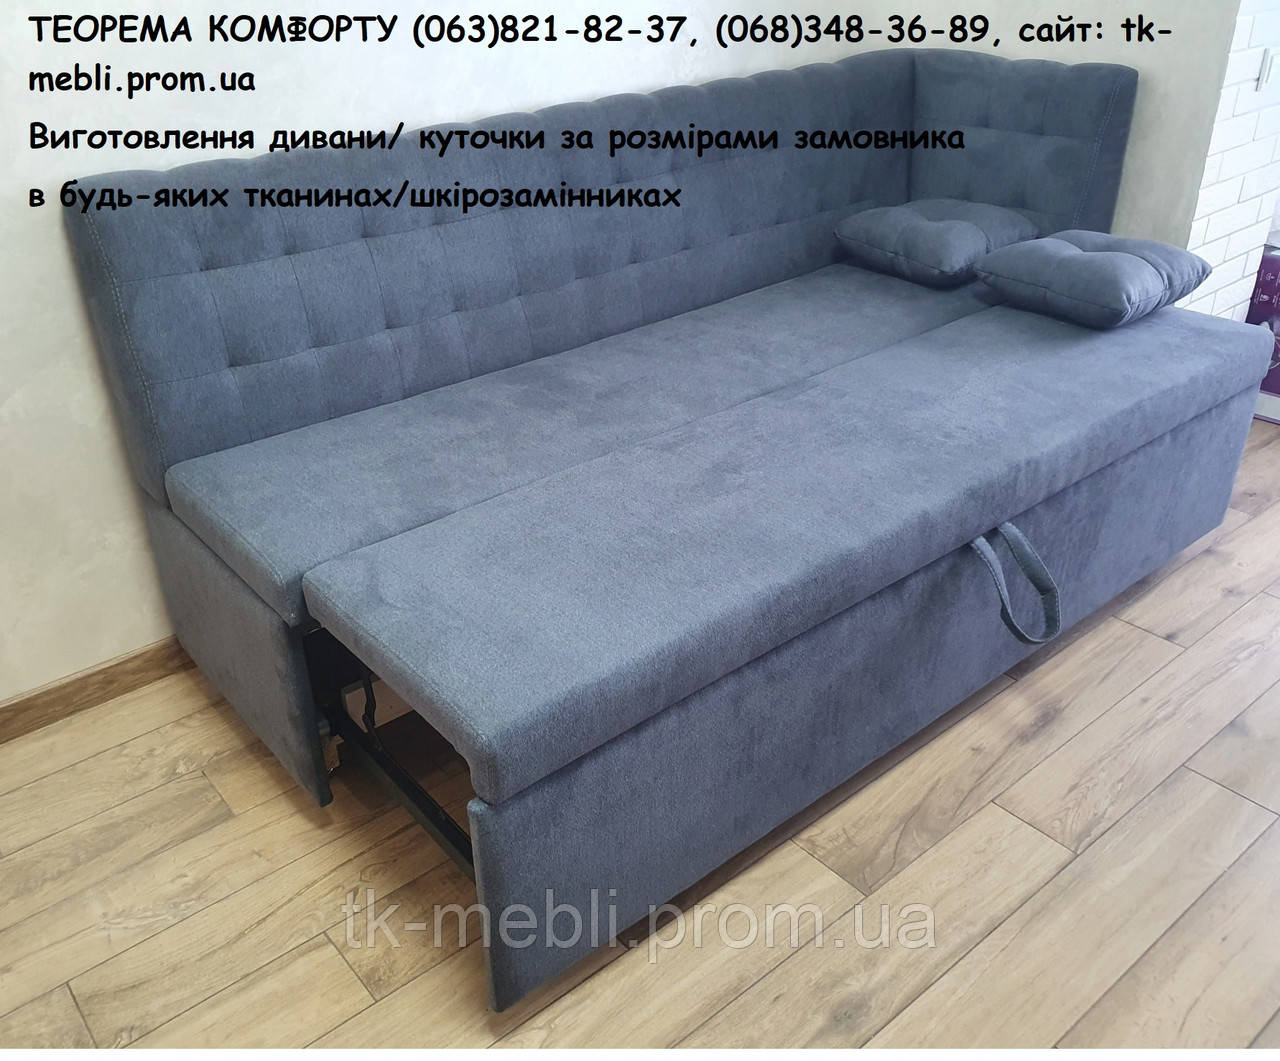 М'який диван для кухні зі спальним місцем Вест D (виготовлення під розмір замовника)